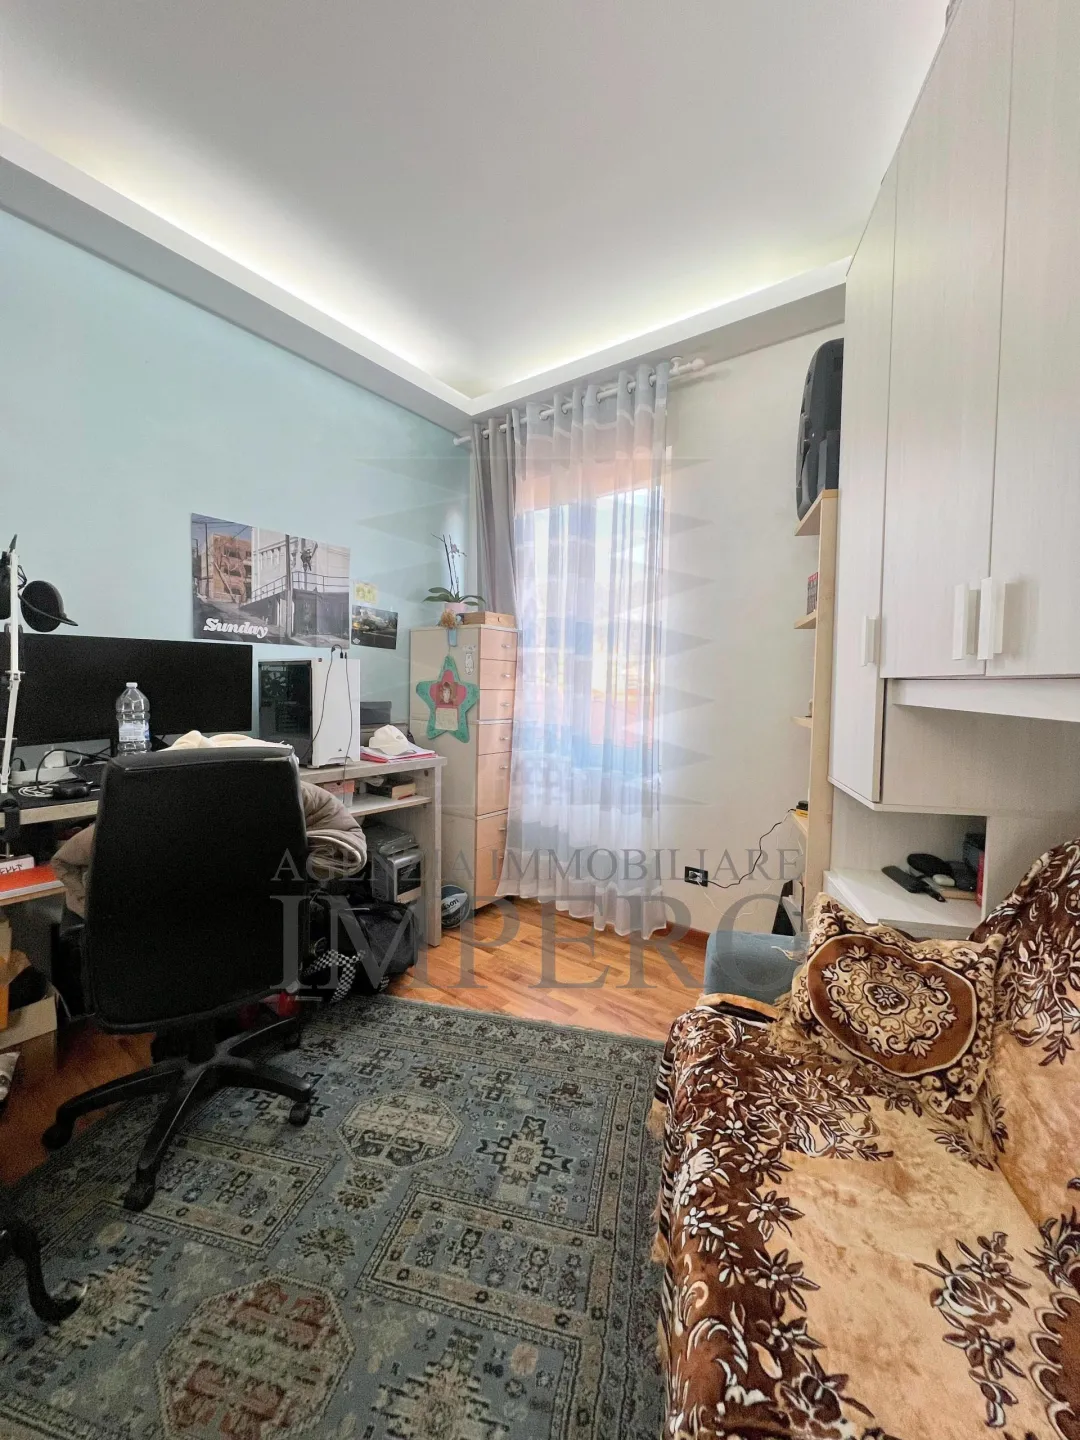 Immagine per Appartamento in vendita a Camporosso corso Della Repubblica 127